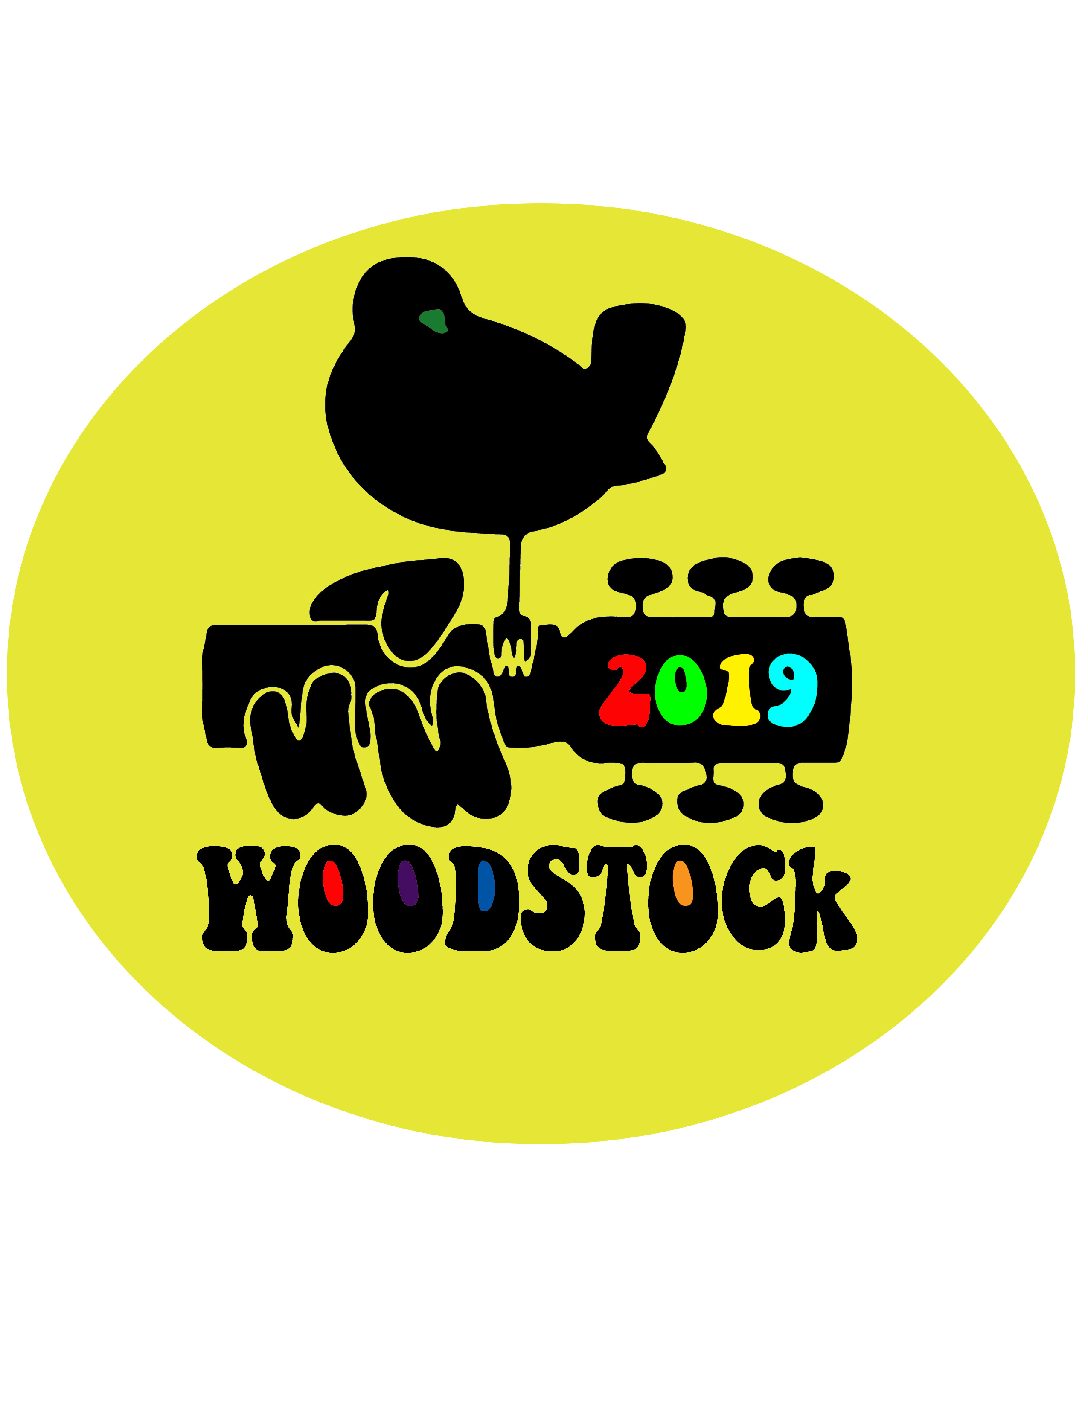 Golden Inn to celebrate Woodstock’s golden anniversary